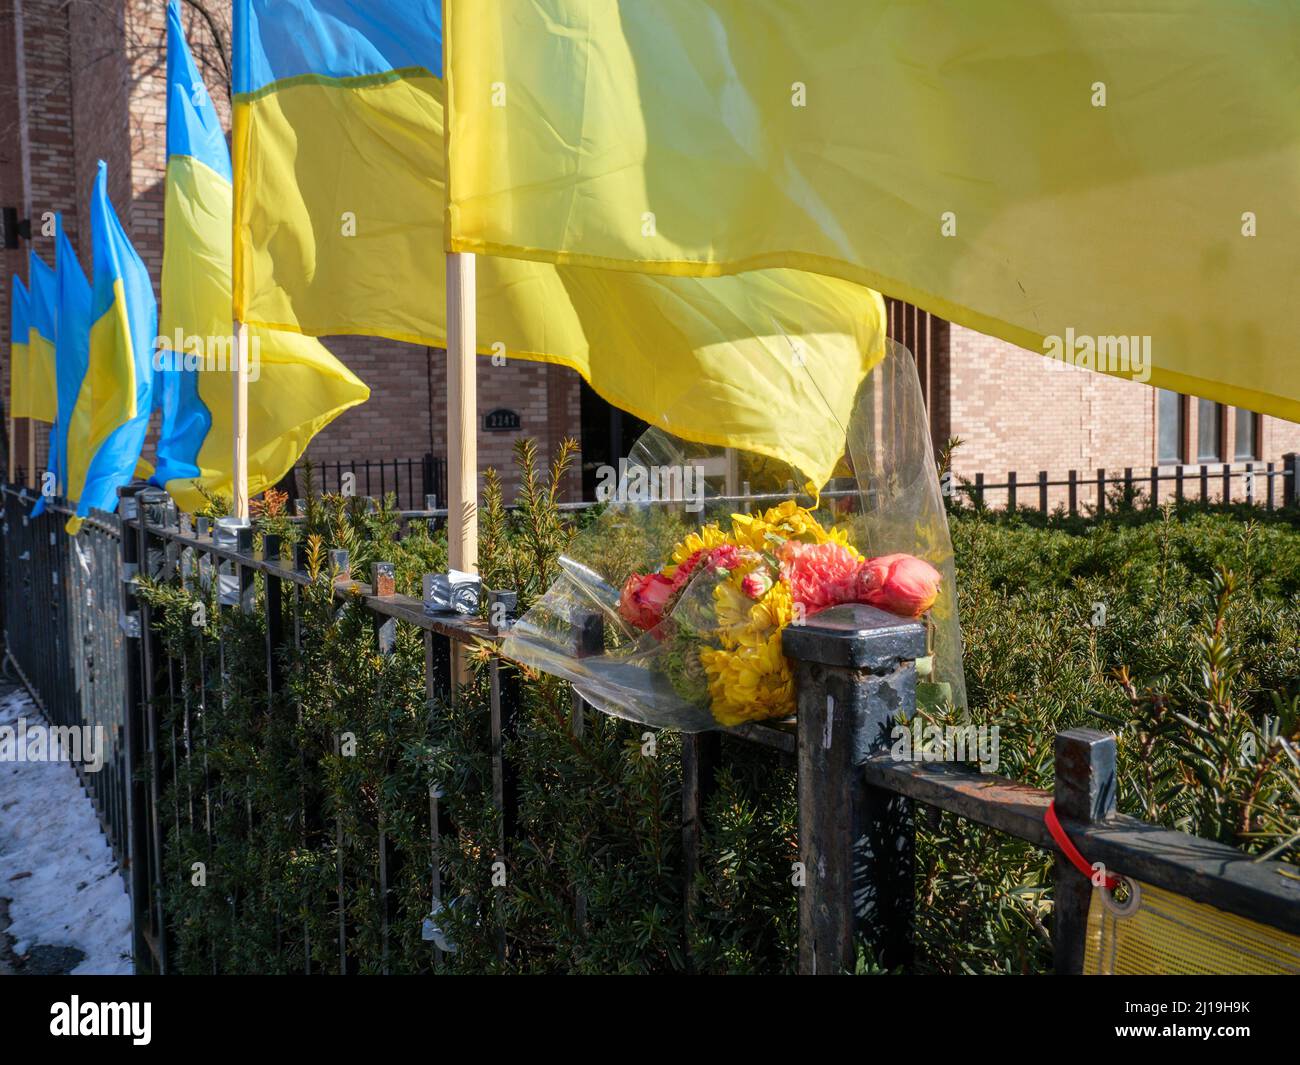 Ukrainian flag & flowers, Ukrainian Village neighborhood, Chicago, Illinois. Stock Photo